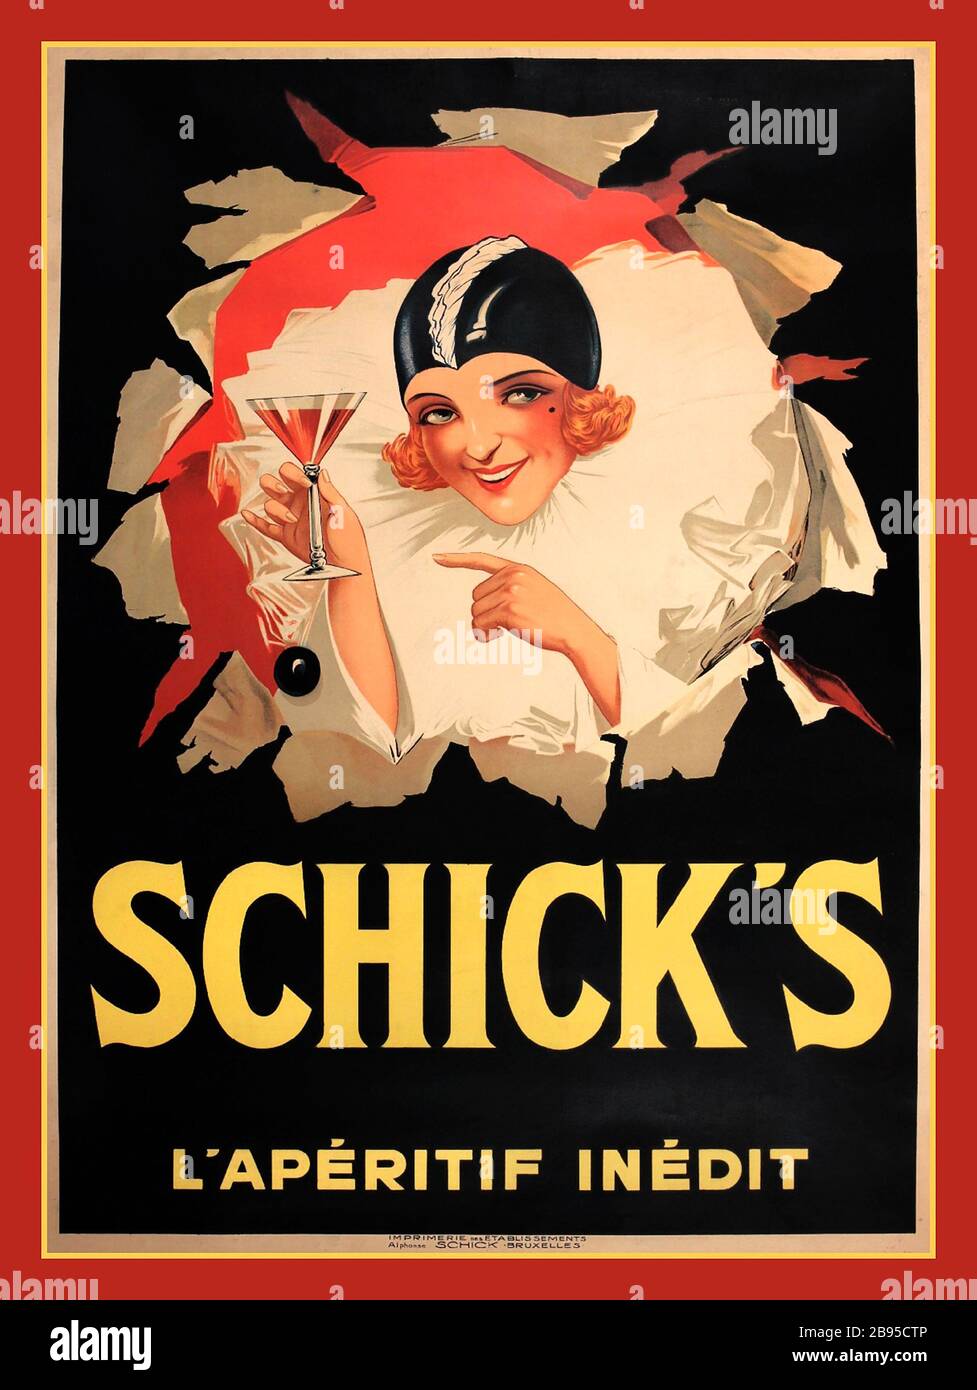 SCHICK'S RETRO Vintage bebidas de los años 30 Poster de alcohol ' Schick's L'Aperitif Inedit ' Nuevo afiche estilo Art Deco de aperitivo impreso en Bruxelles 1930 Foto de stock